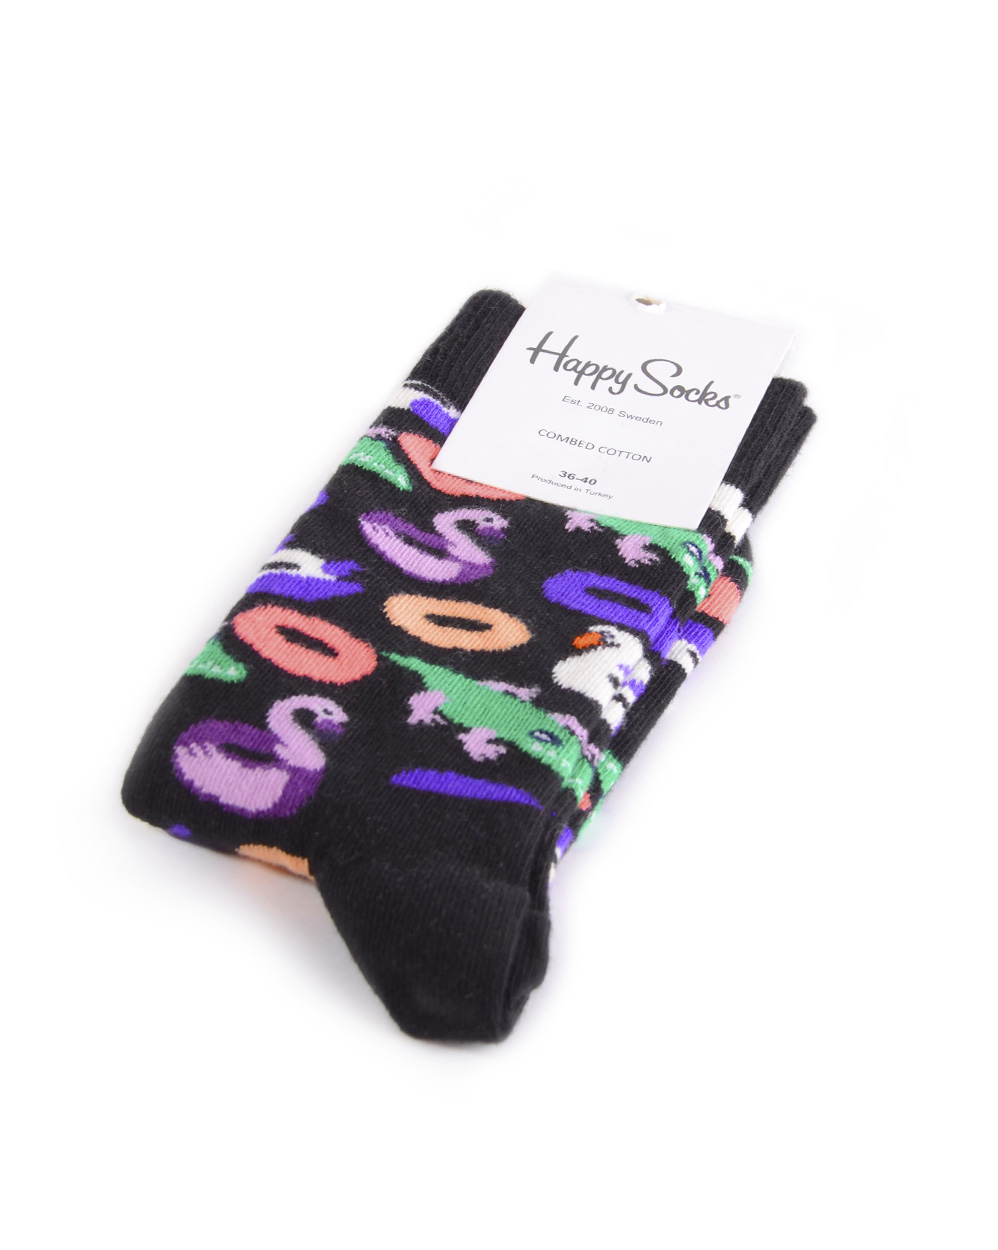 Носки Happy Socks Combed Cotton Zoo Black отзывы